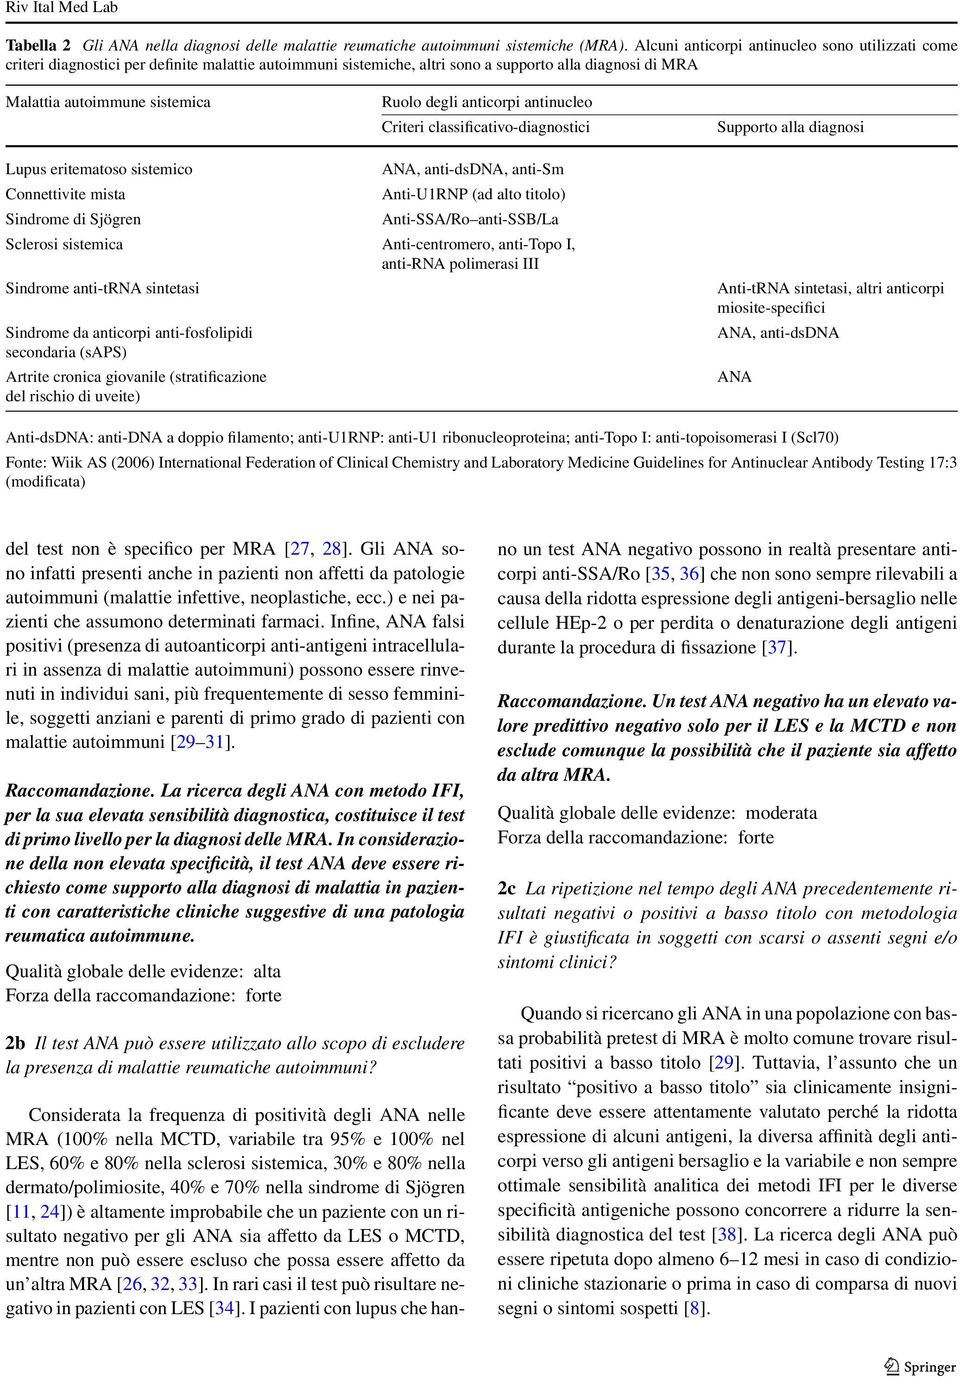 anticorpi antinucleo Criteri classificativo-diagnostici Supporto alla diagnosi Lupus eritematoso sistemico ANA, anti-dsdna, anti-sm Connettivite mista Anti-U1RNP (ad alto titolo) Sindrome di Sjögren